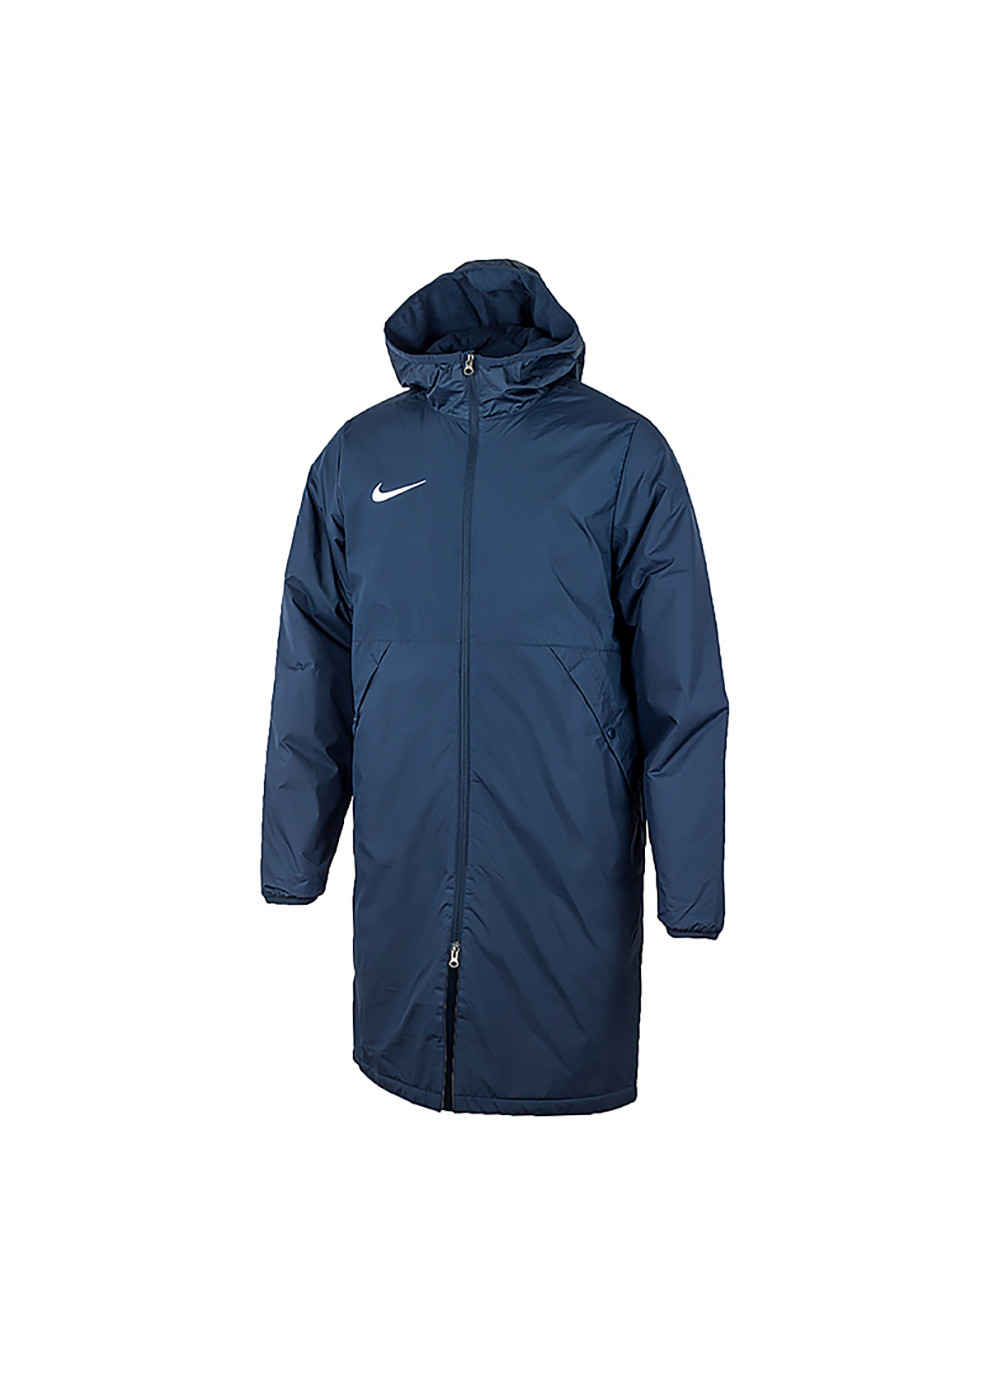 Синя демісезонна чоловіча куртка m nk syn fl rpl park20 sdf jkt синій m (cw6156-451 m) Nike